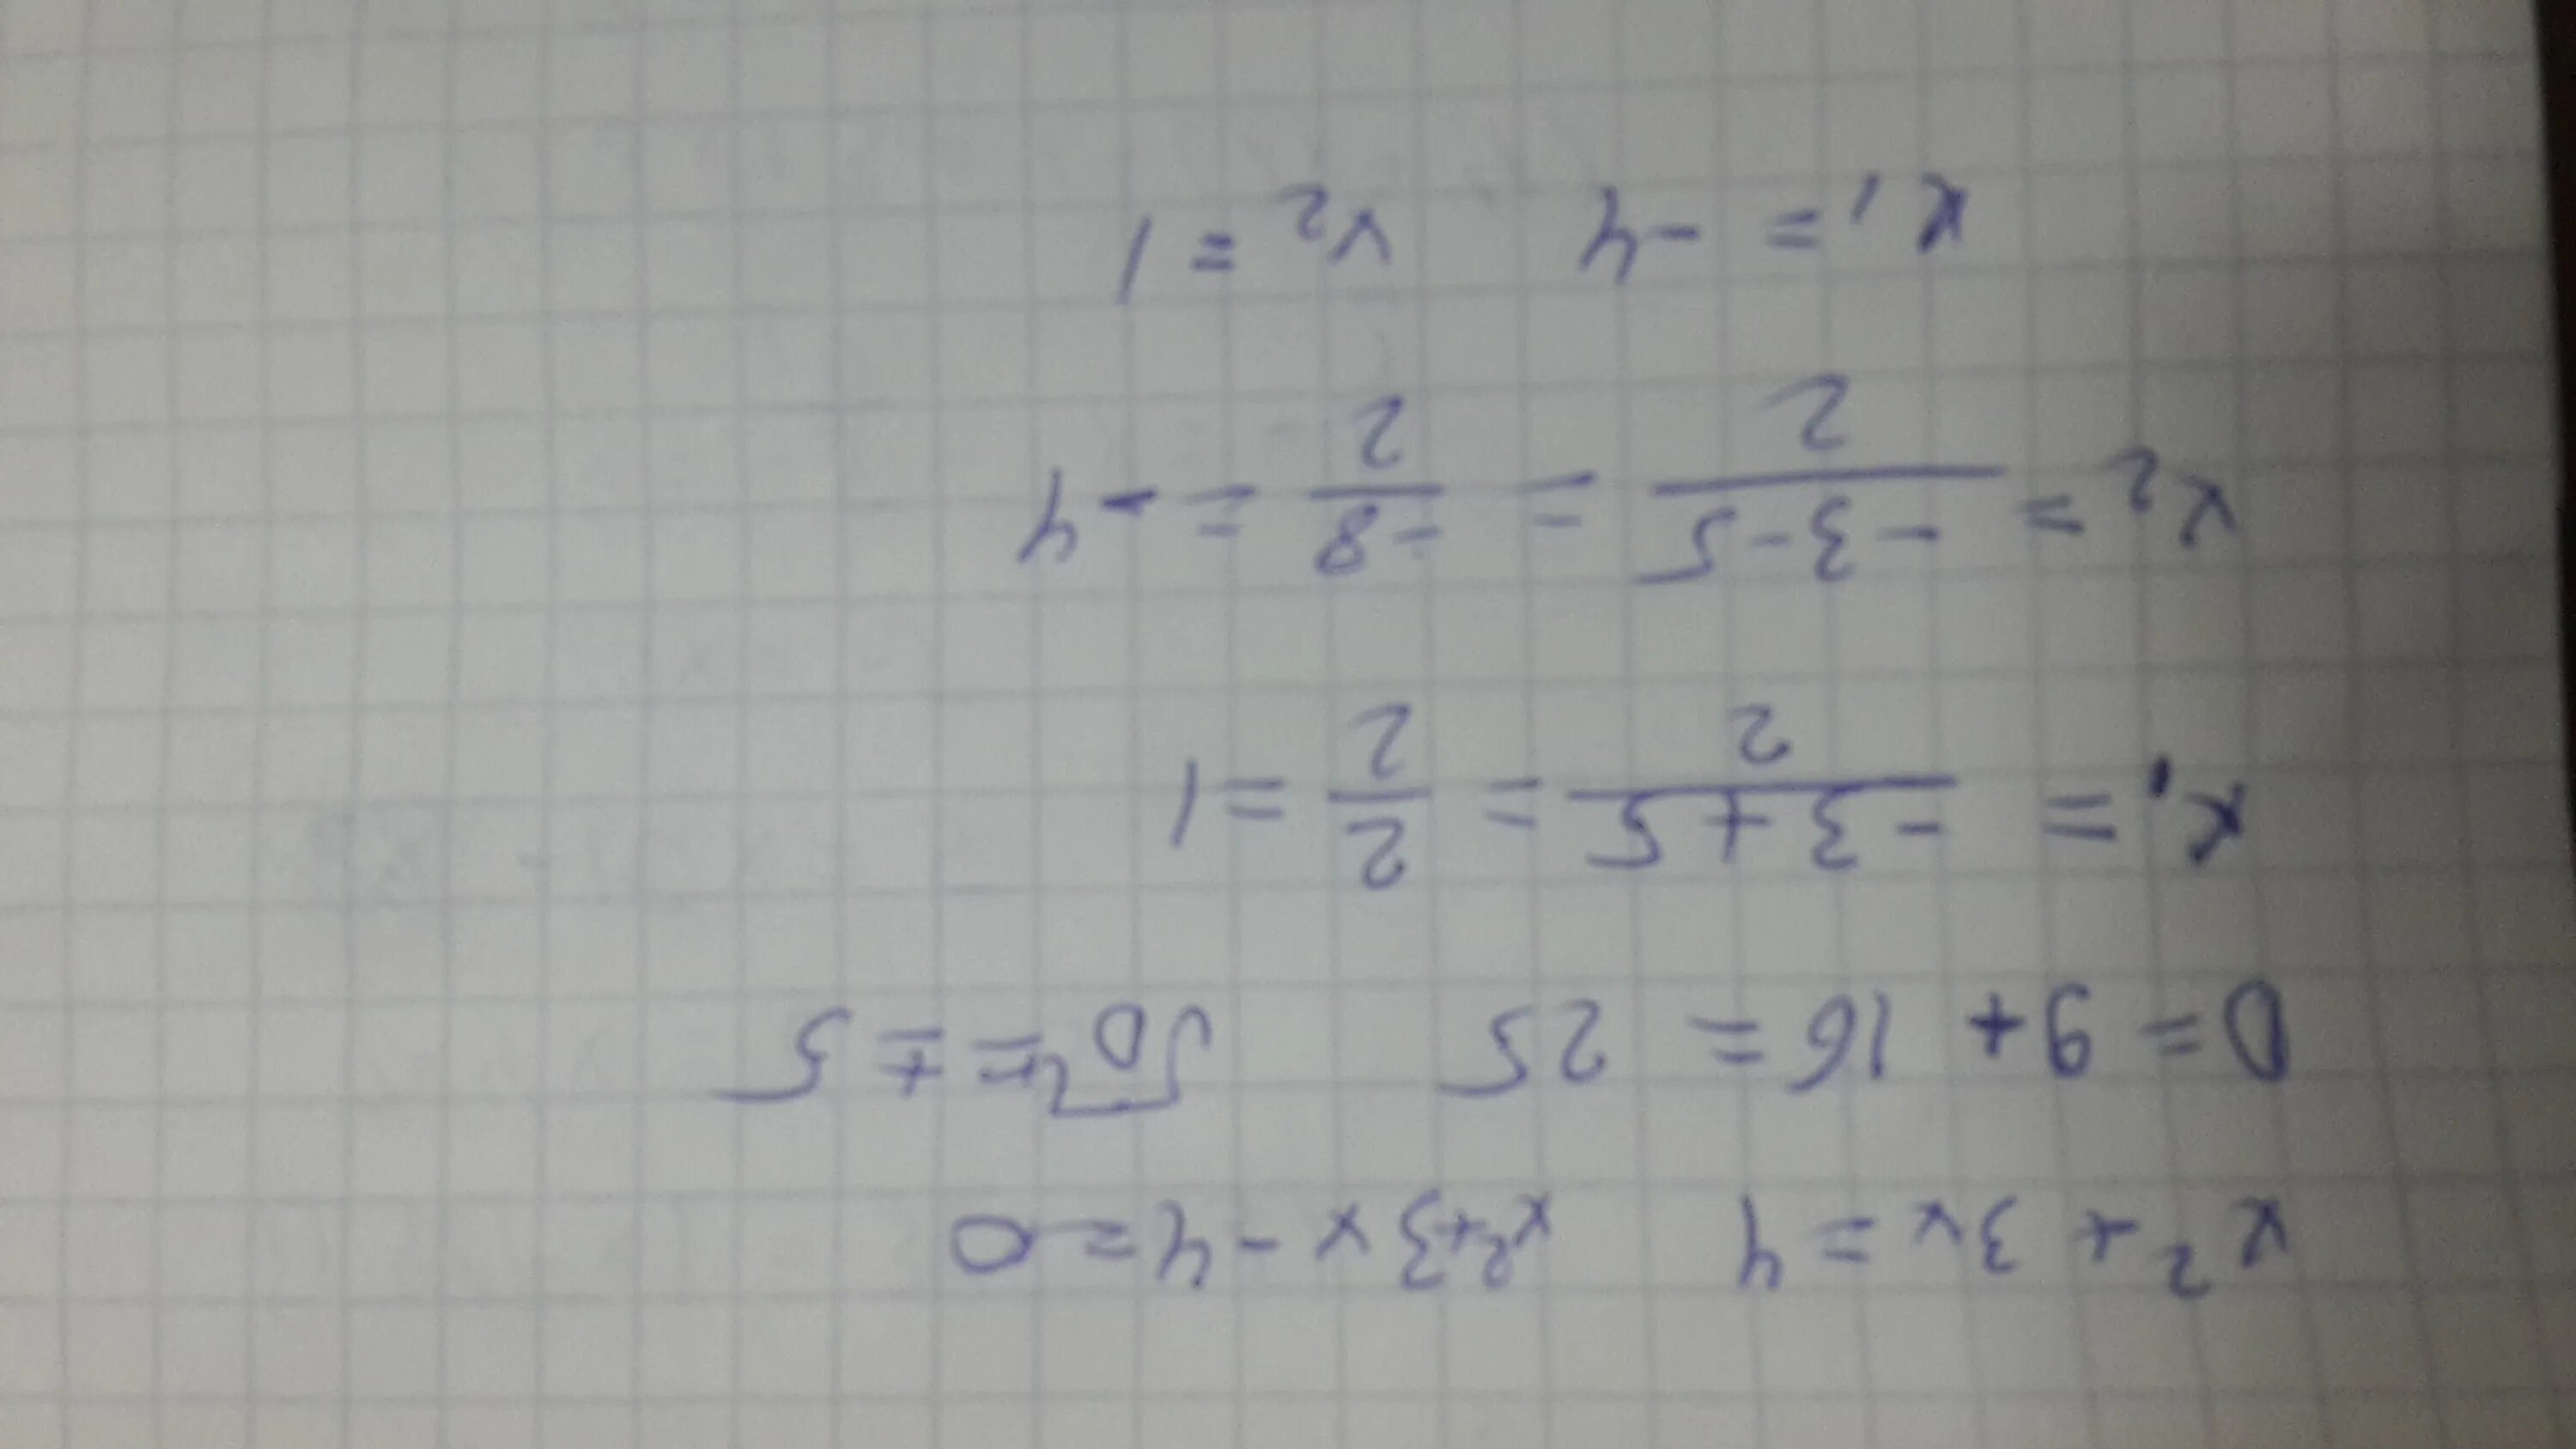 Решение уравнения (8x+x)*4=592. Решите уравнения и запишите корни в порядке возрастания. Запишите корни в порядке возрастания через точку с запятой. 3х 4 6 8 9